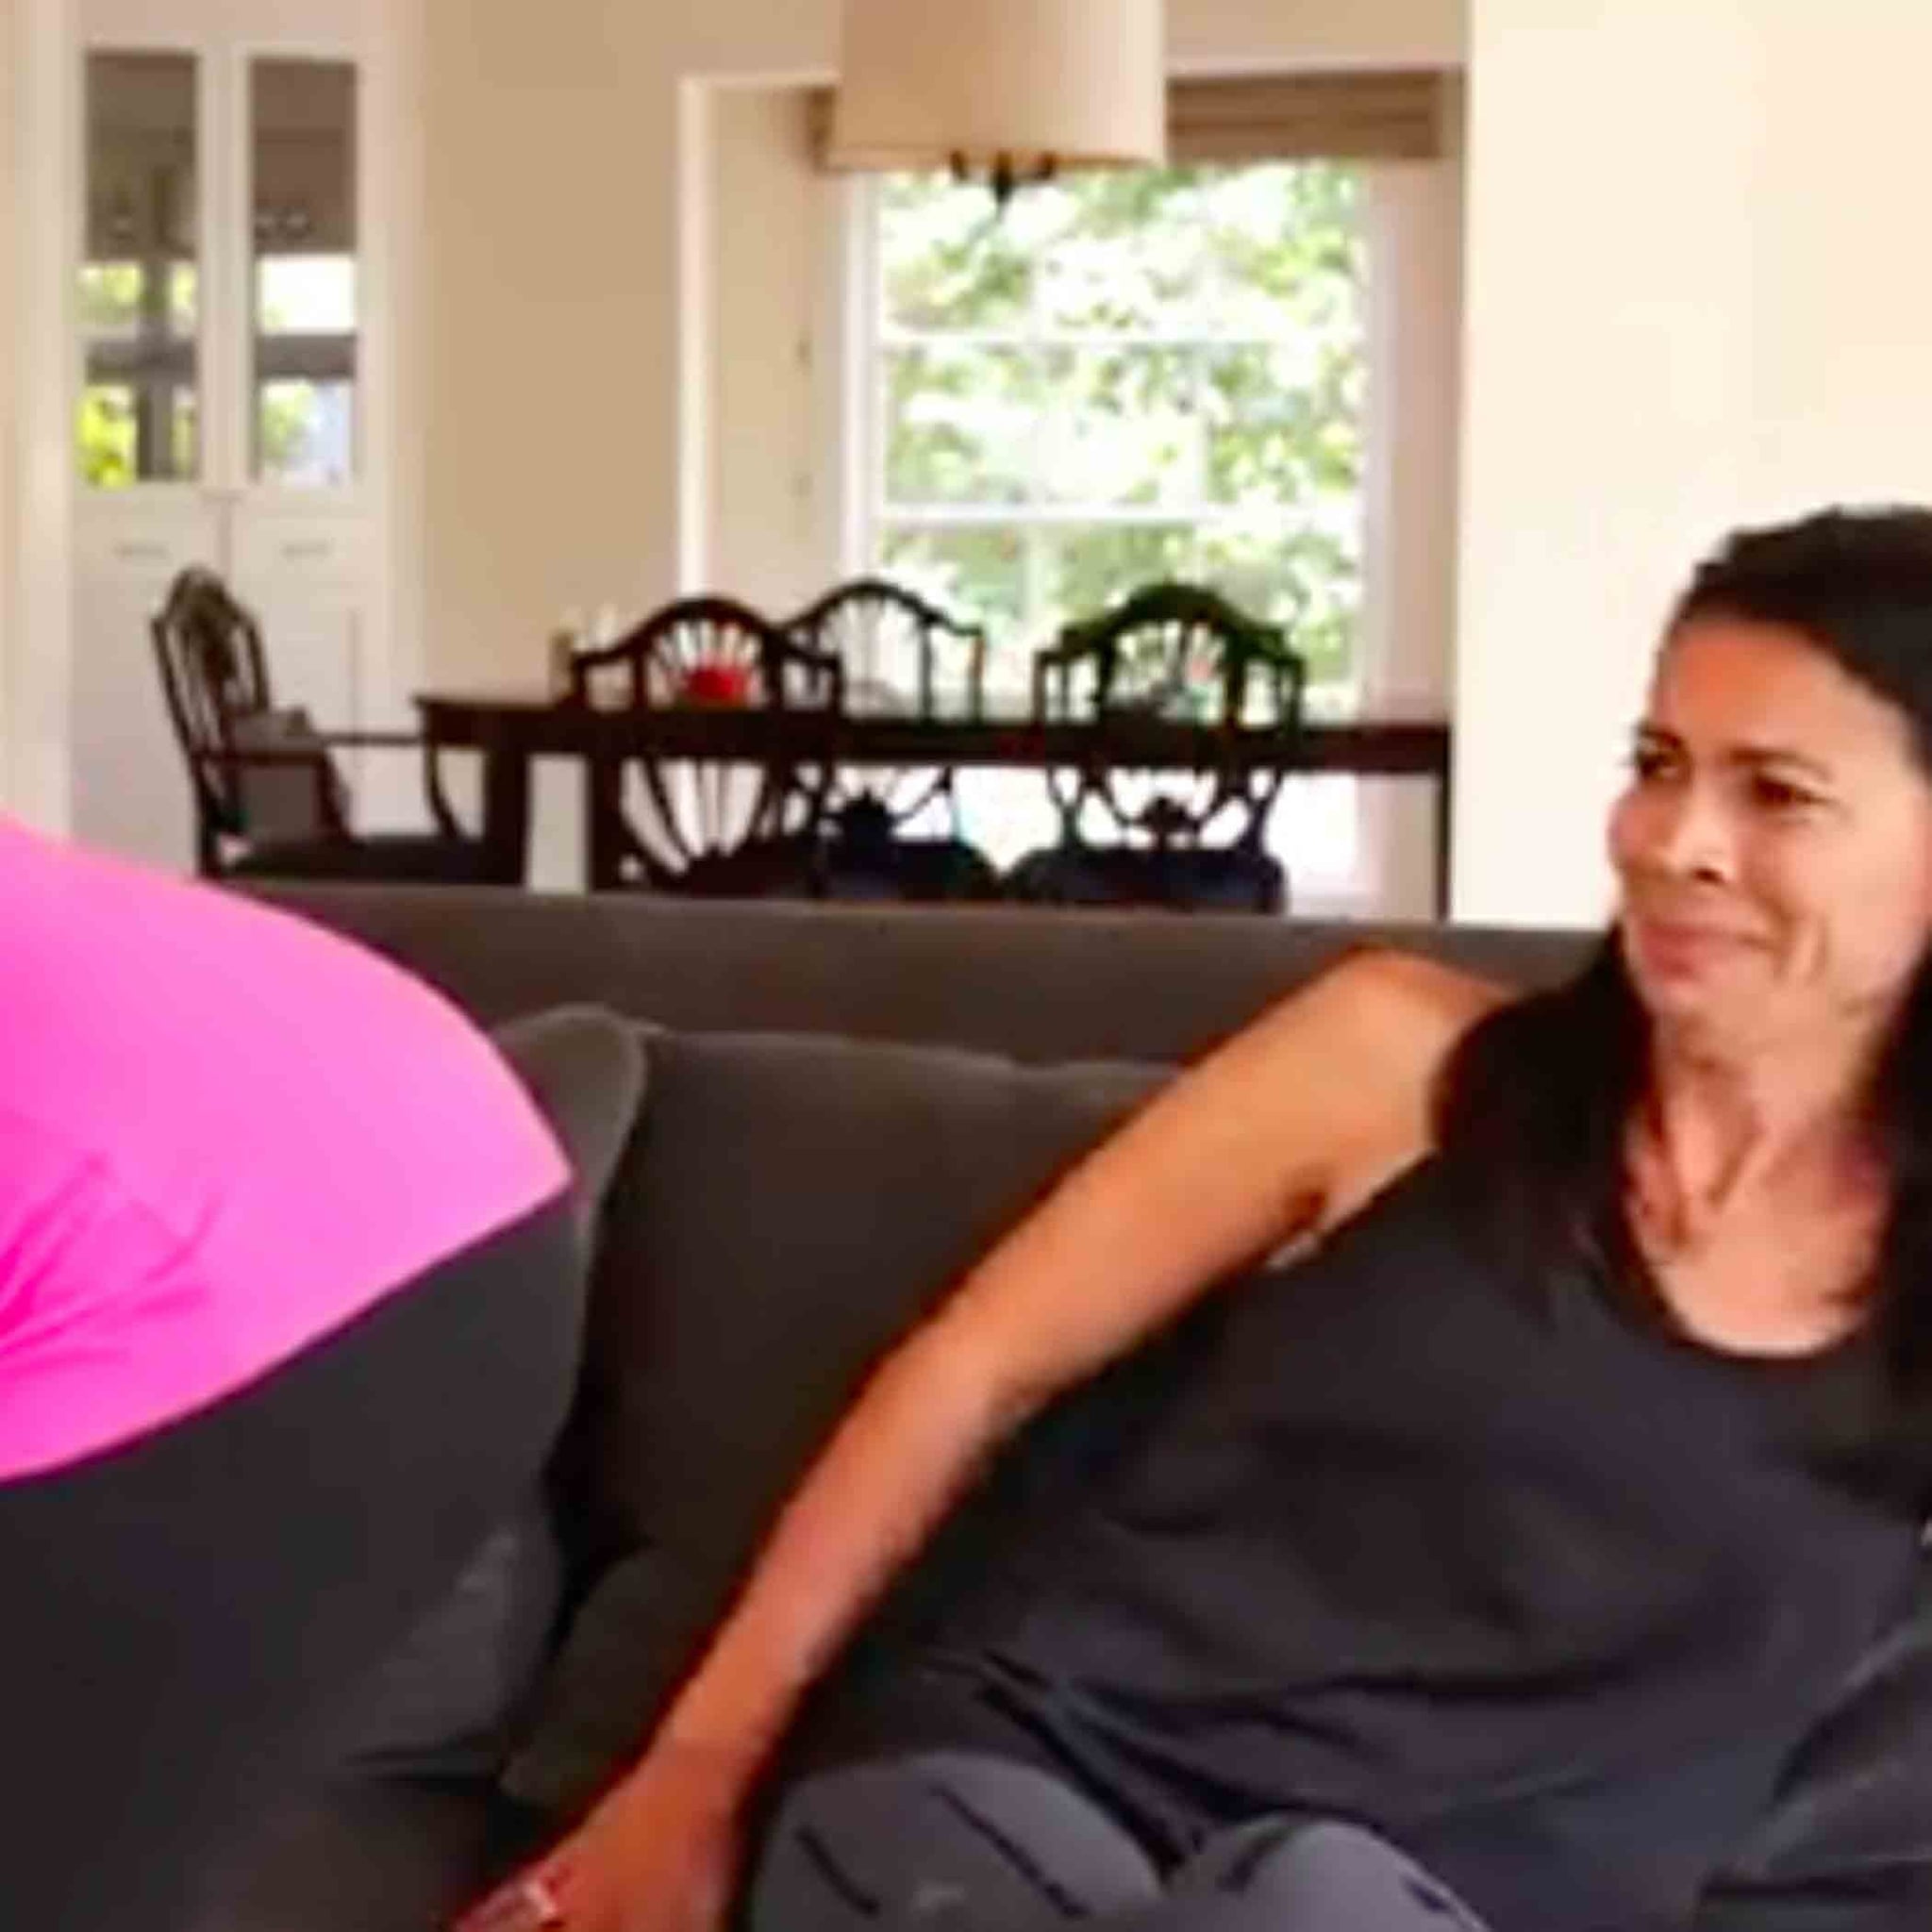 Mom's Funny Video on Raising Boys | POPSUGAR Family